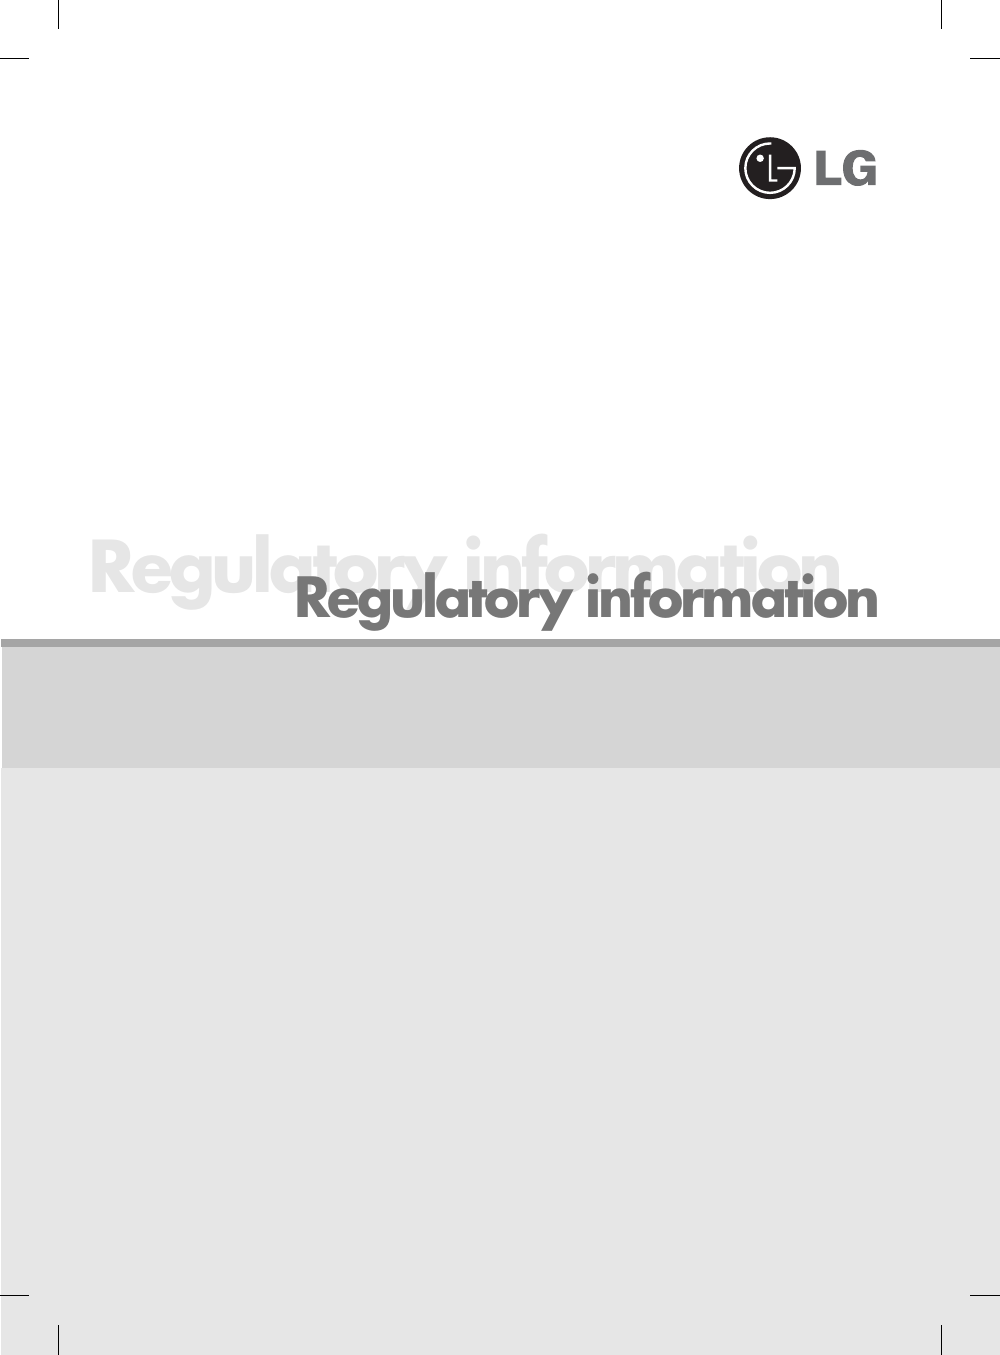 Regulatory informationRegulatory information